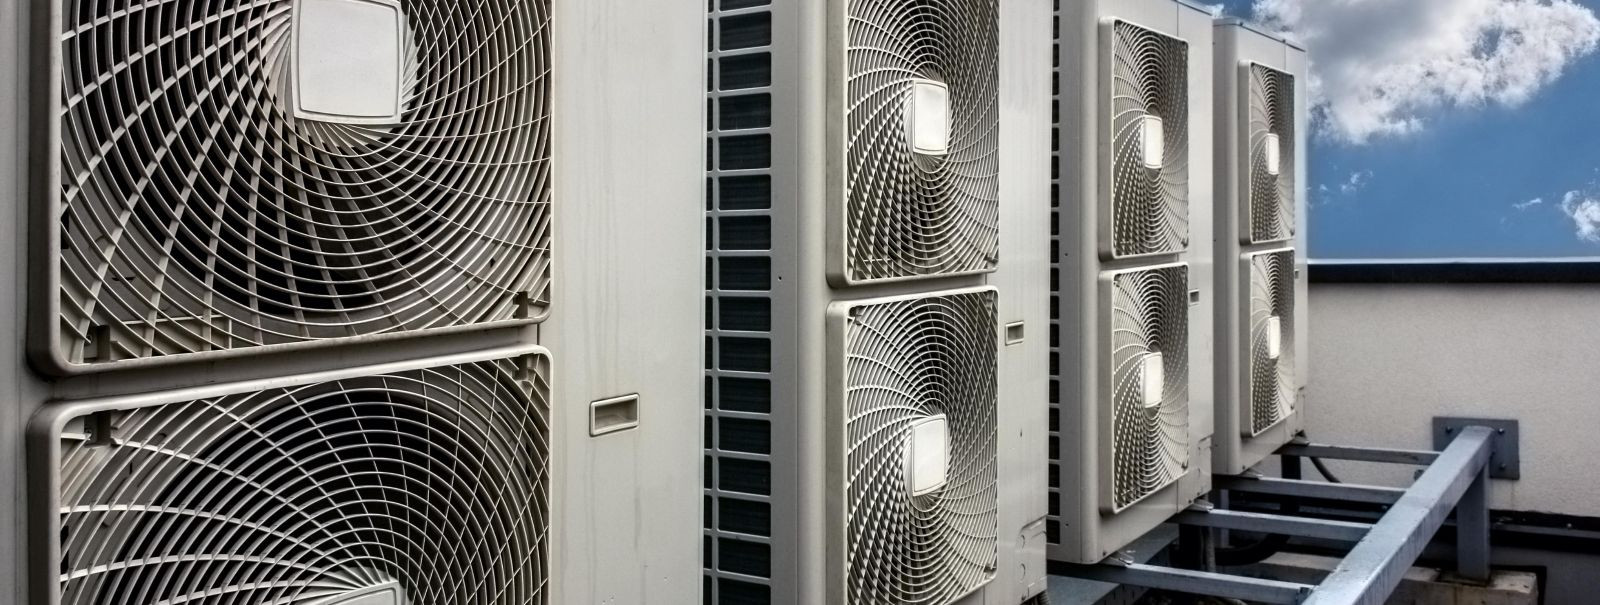 Ventilatsioon on oluline osa kvaliteetse õhukvaliteedi tagamisel. Kütte- ja jahutusseadmete abil saab kontrollida õhu sissevoolu sagedust, intensiivsust, temper